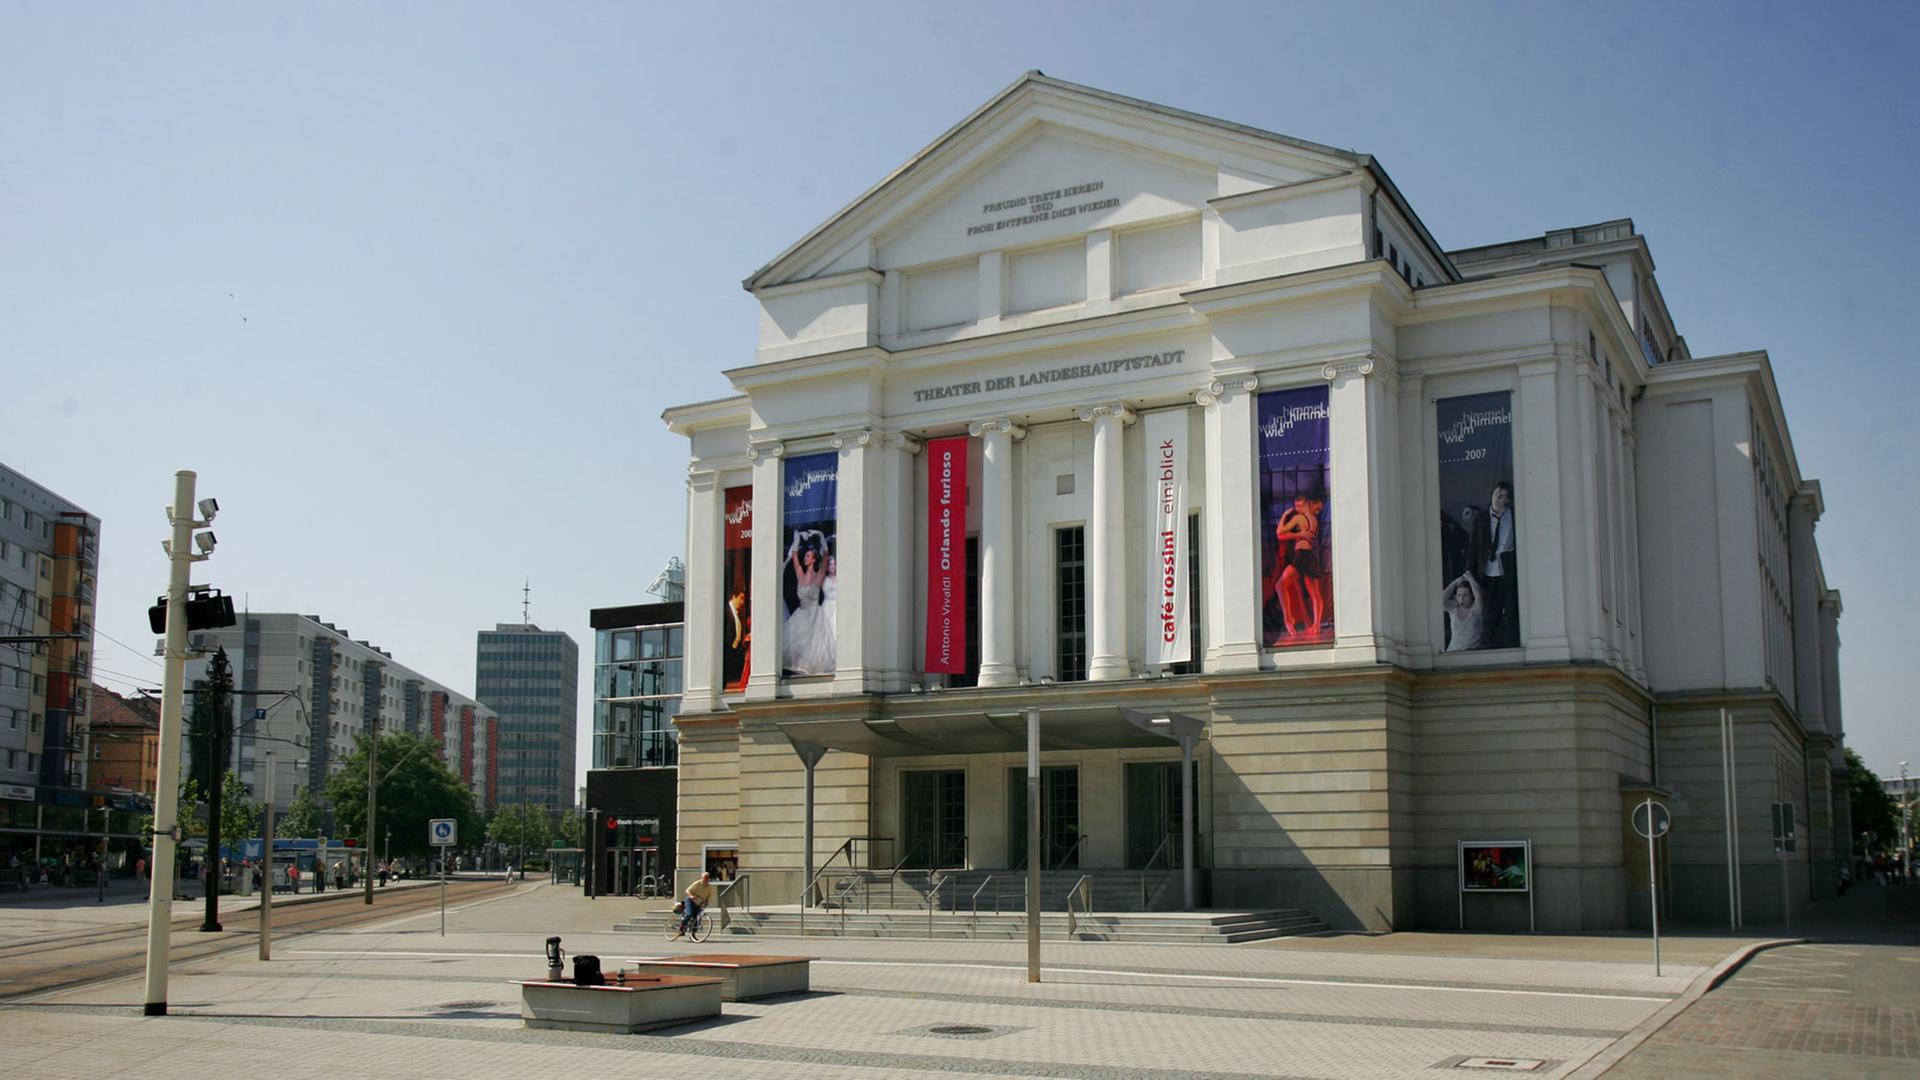 Das Theater der Landeshauptstadt von Sachsen-Anhalt am Universitätsplatz in Magdeburg.